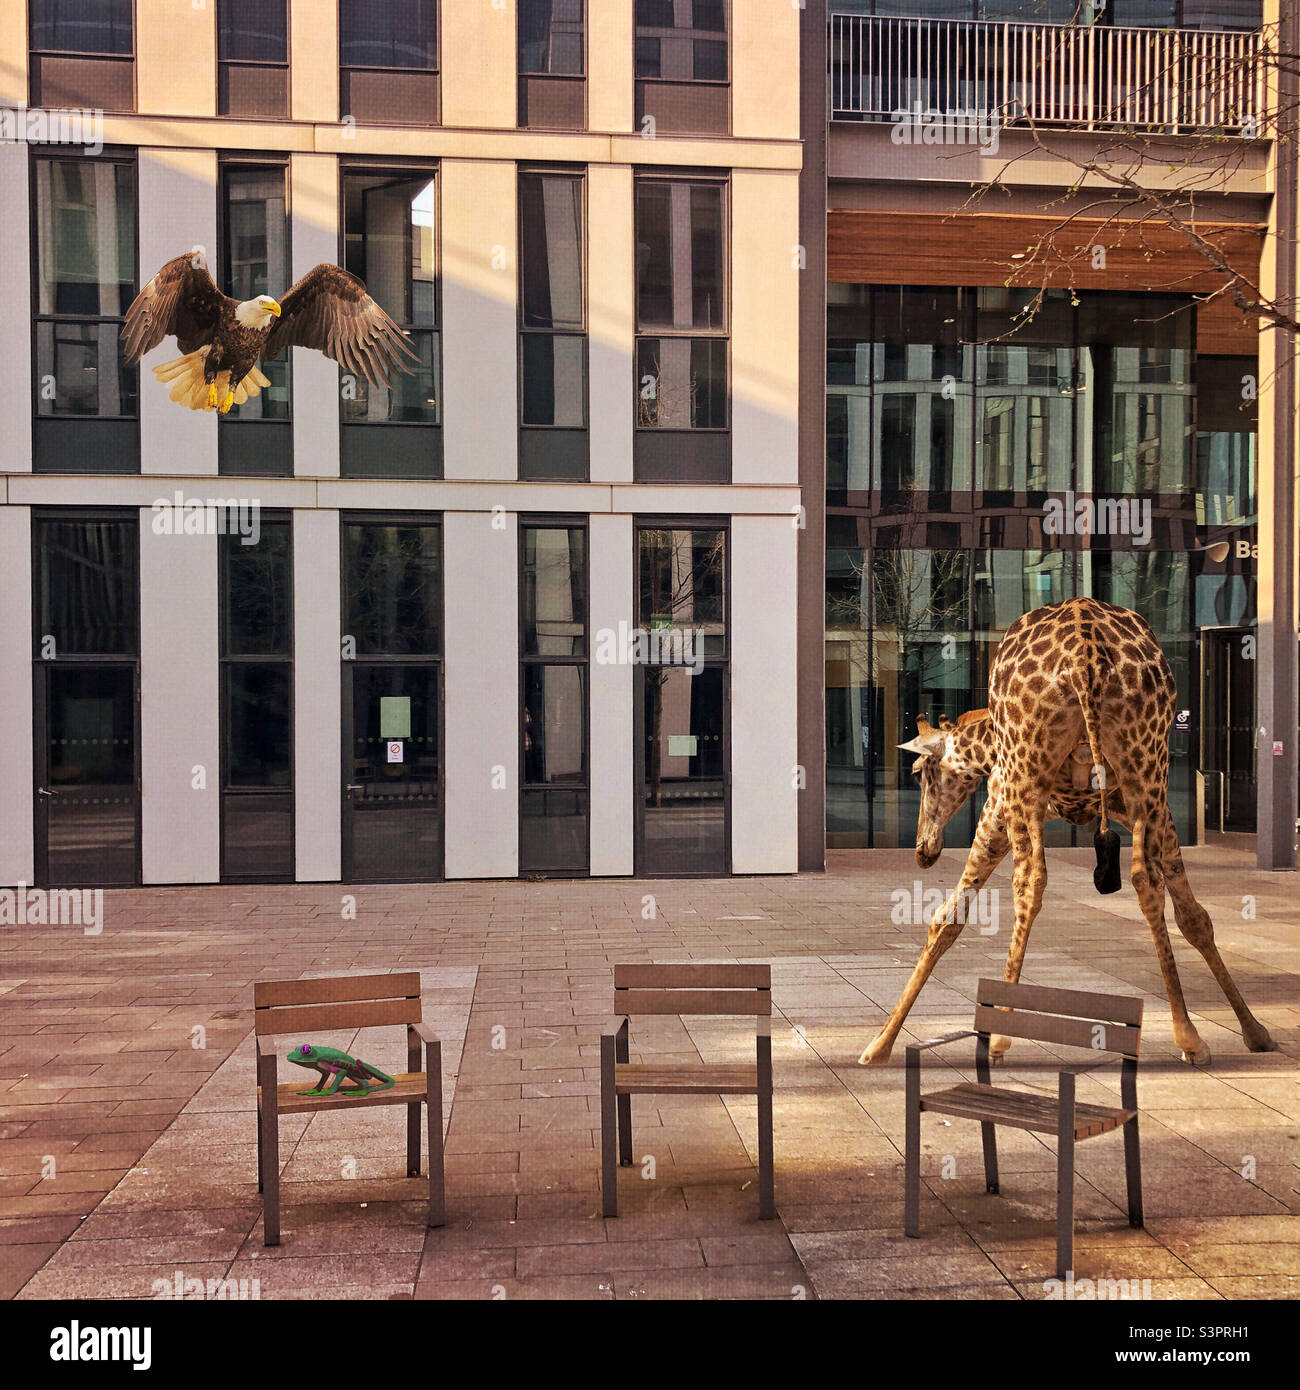 C'est une jungle dehors là. Girafe, aigle et grenouille en milieu urbain, Université d'Édimbourg, Écosse. Créé avec l'application Urban Jungle photo Editing. Banque D'Images